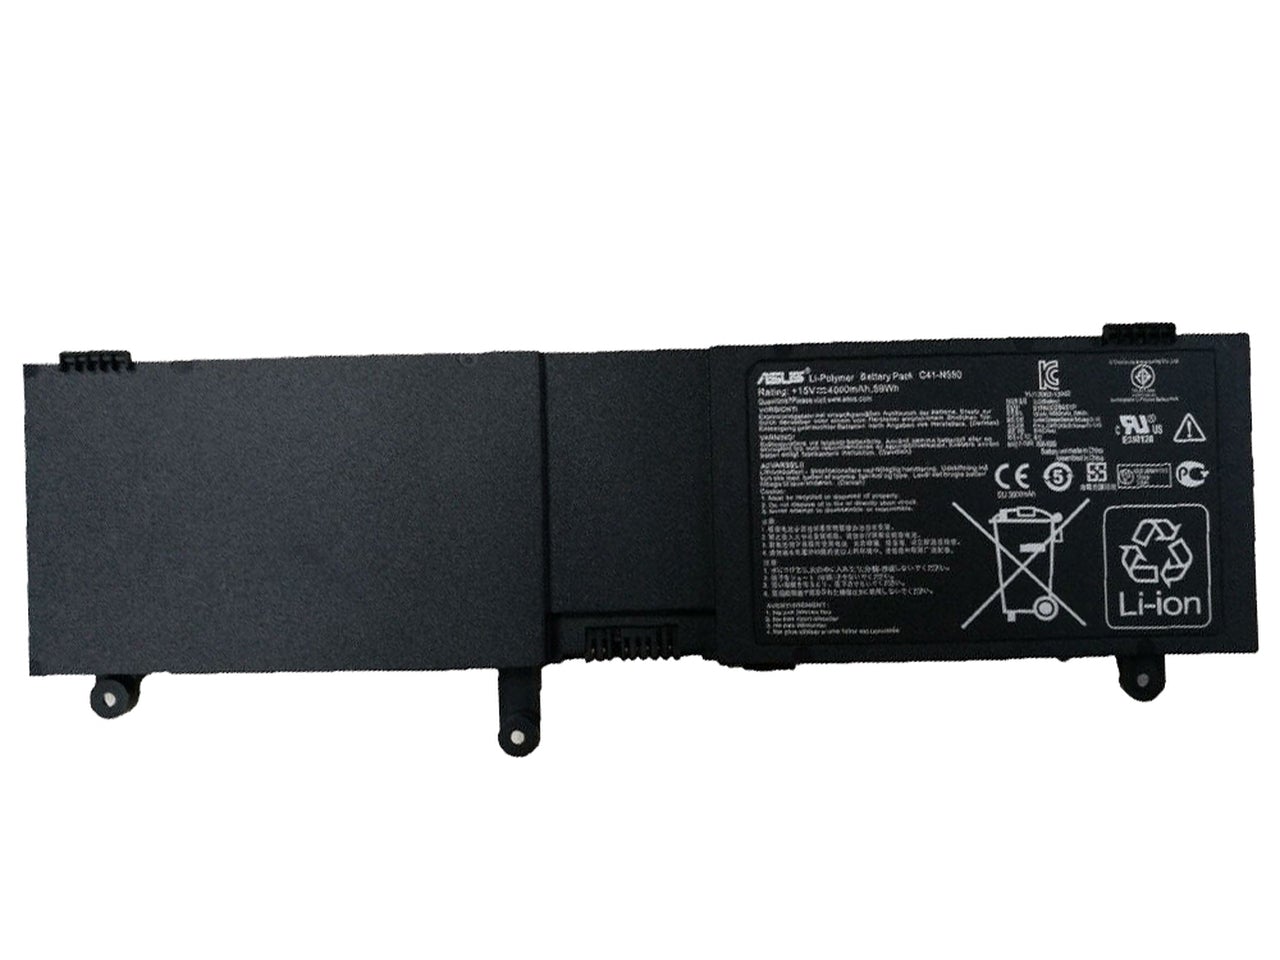 Asus C41-N550 Battery for Asus G550J Series, N550J Series, Rog 550 Series, Rog G550JX